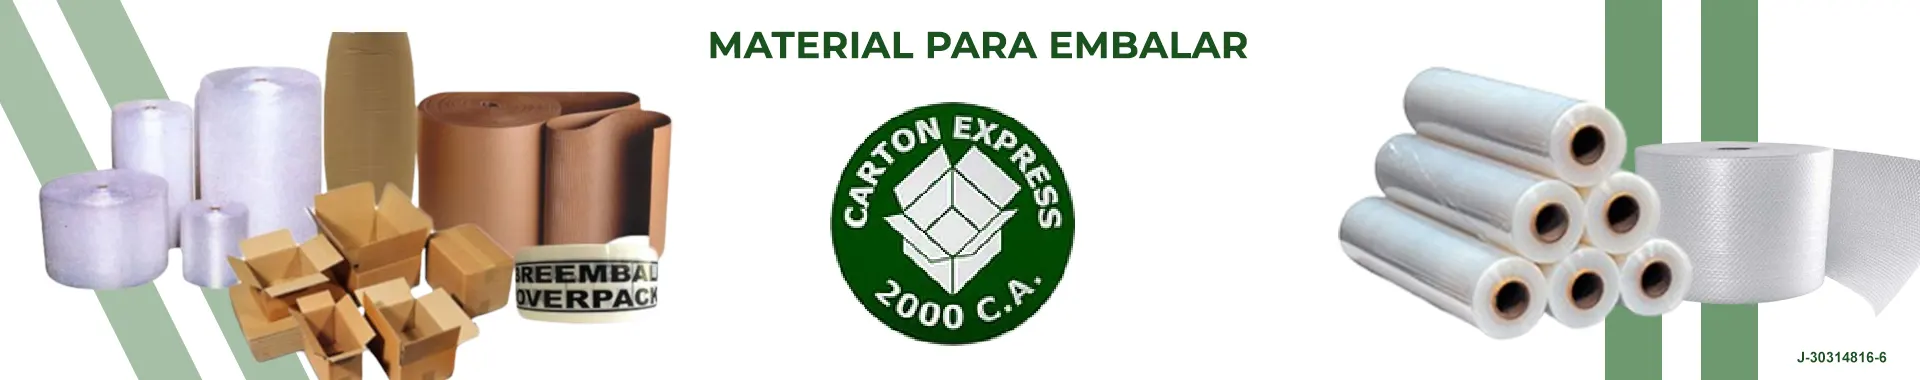 Imagen 4 del perfil de Cartón Express 2000